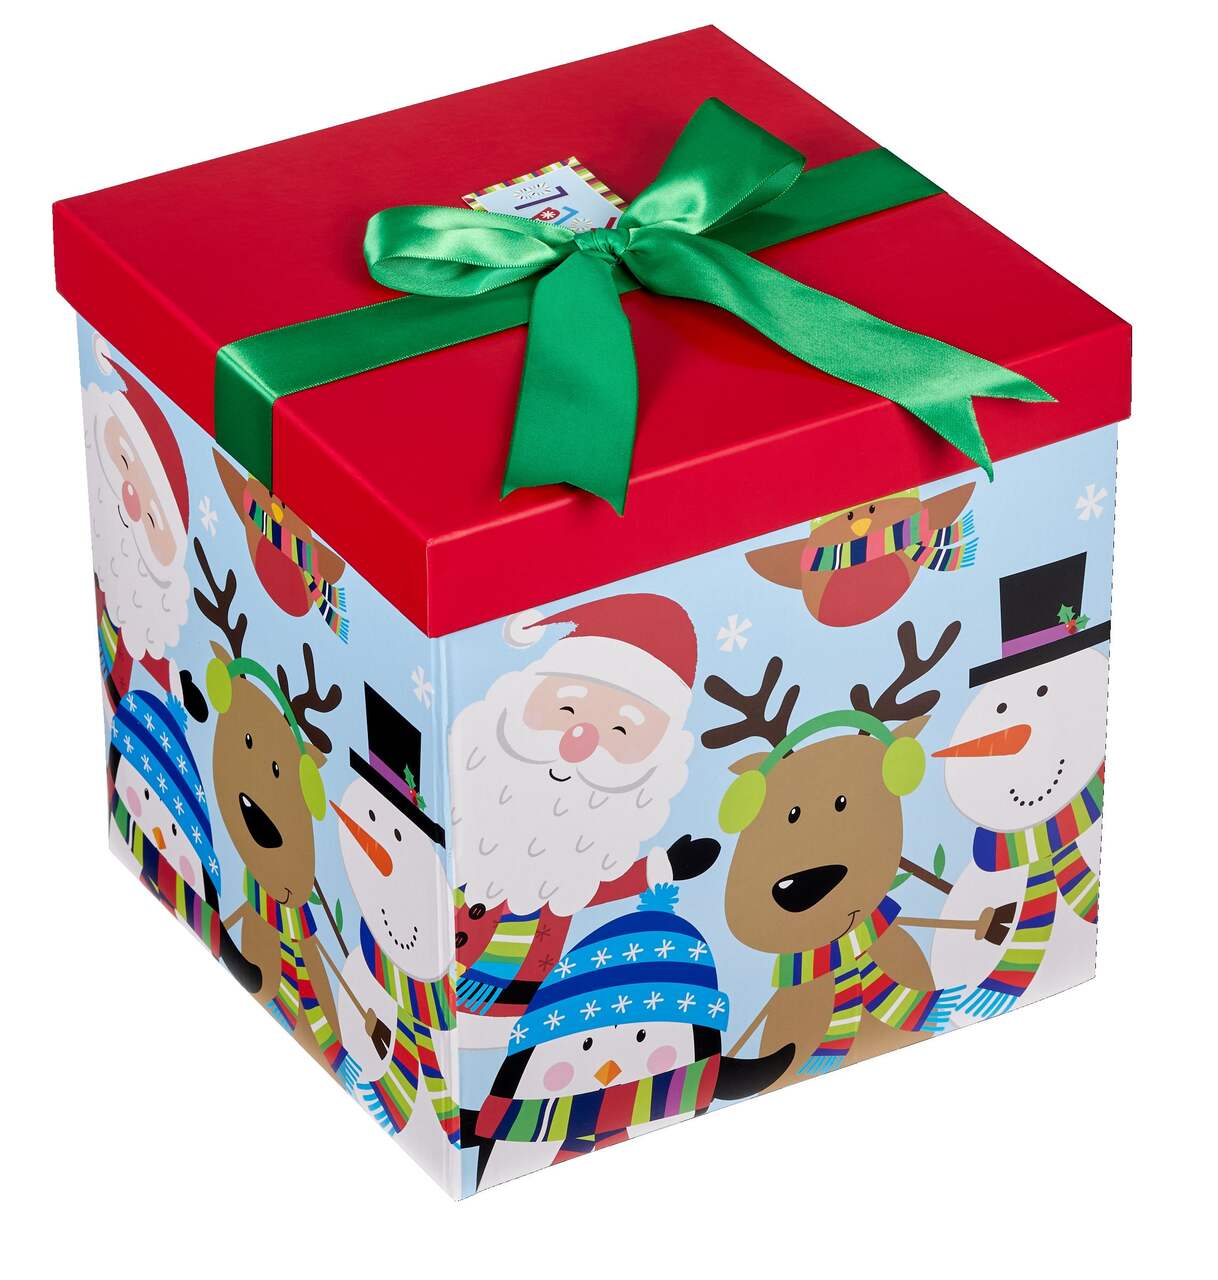 Footbox, 30 coffrets-cadeaux 100% foot à offrir pour Noël